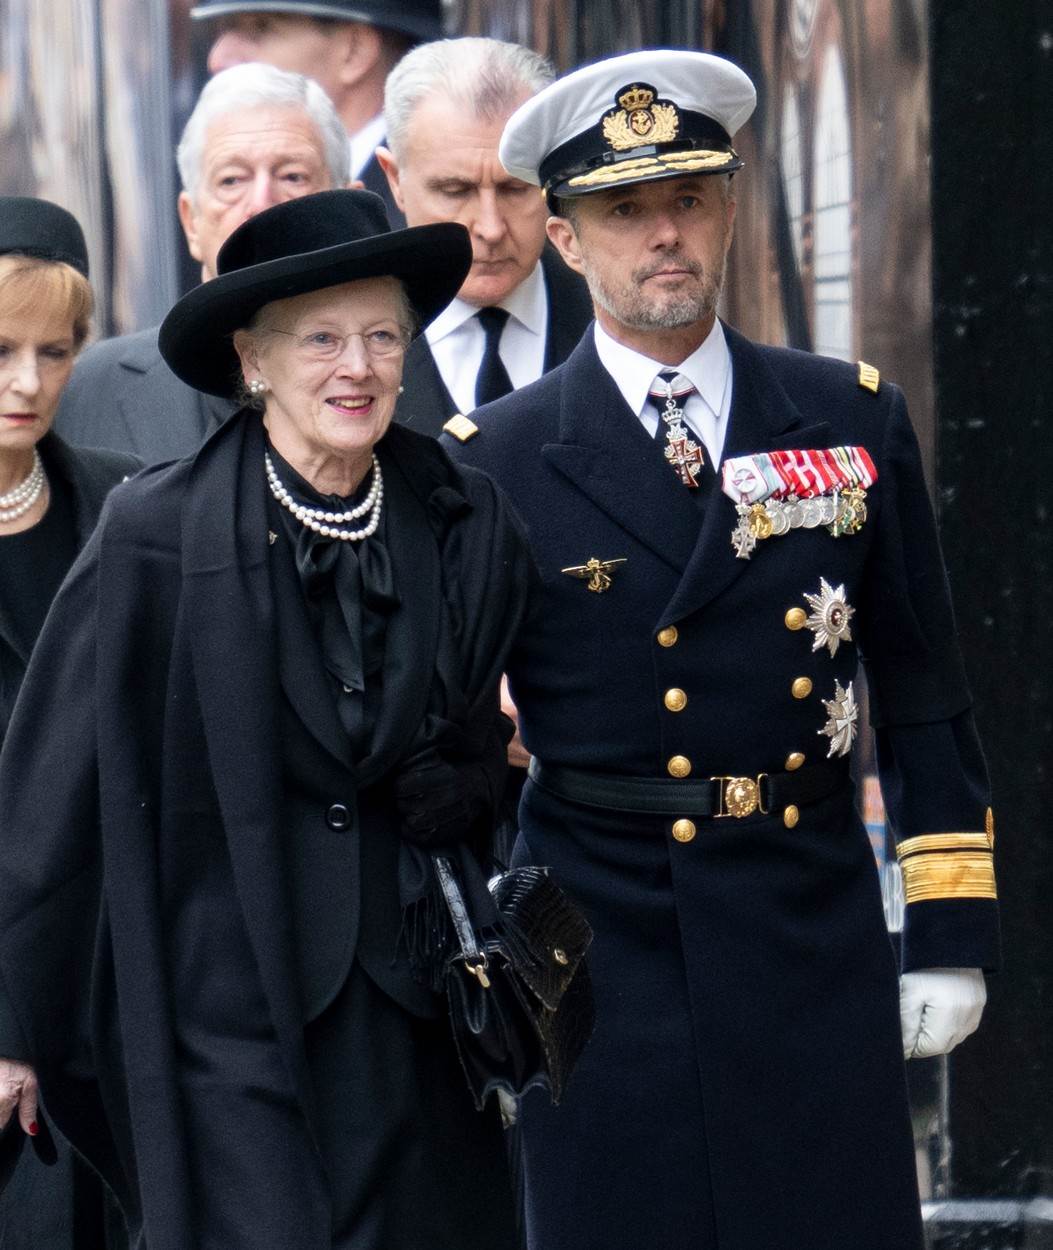 Danska kraljica Margareta II. ima kovid